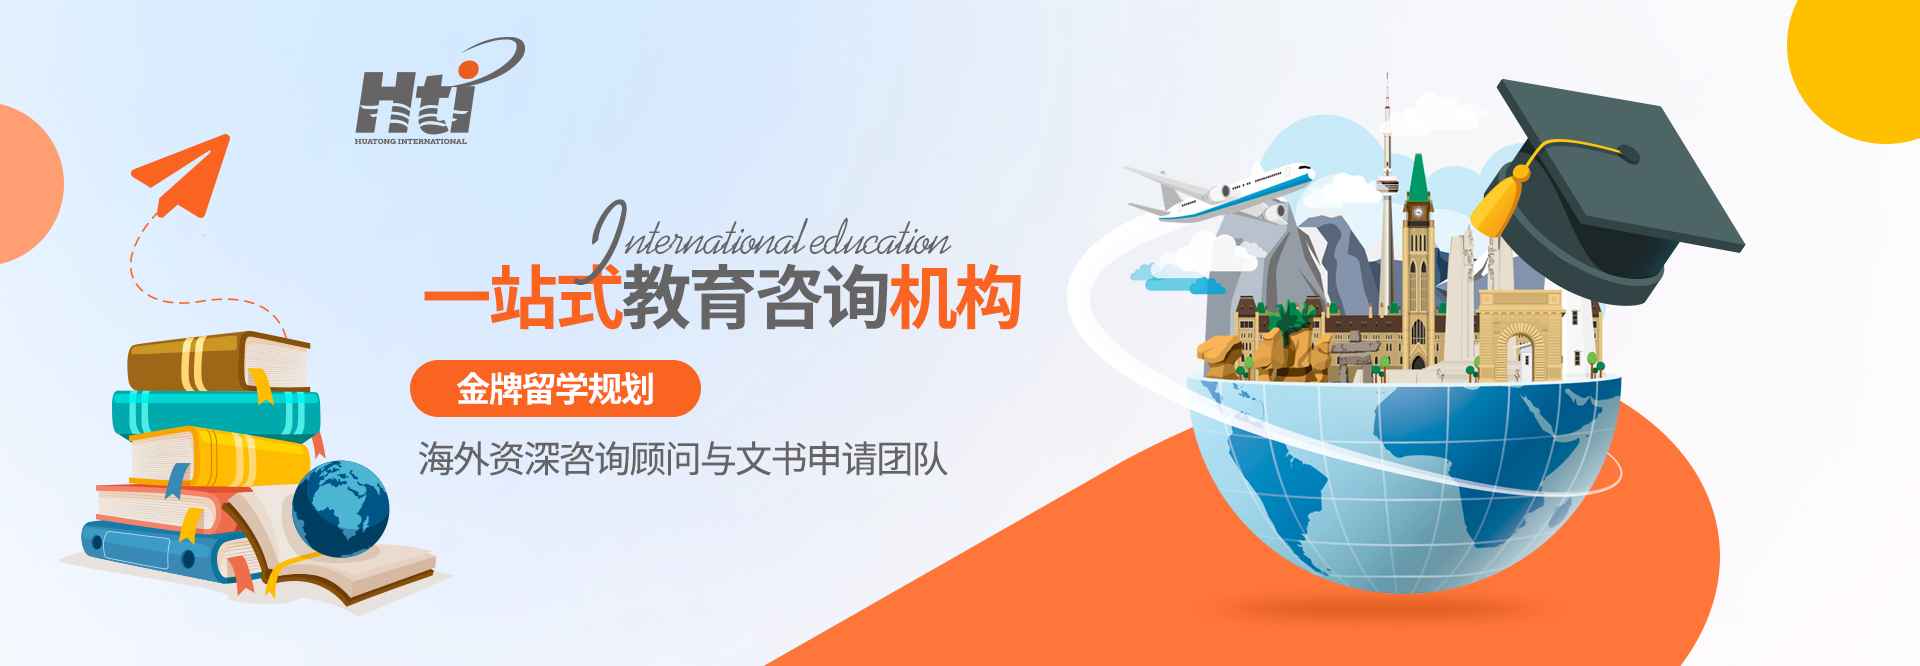 华通国际教育